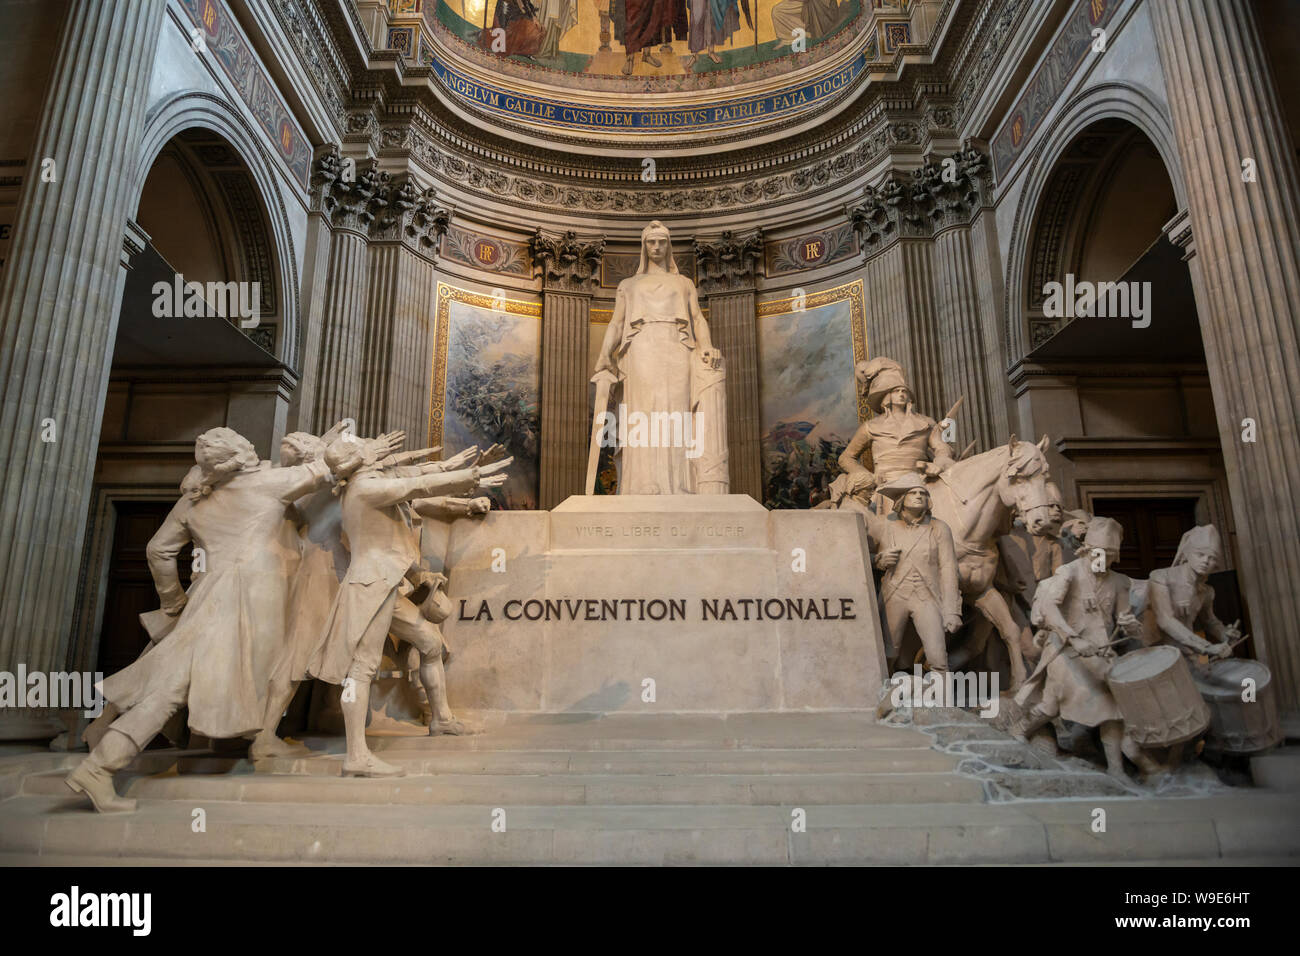 La Convention Nationale sculpture by François-Léon Sicard within the Panthéon in the Latin Quarter, Paris, France Stock Photo